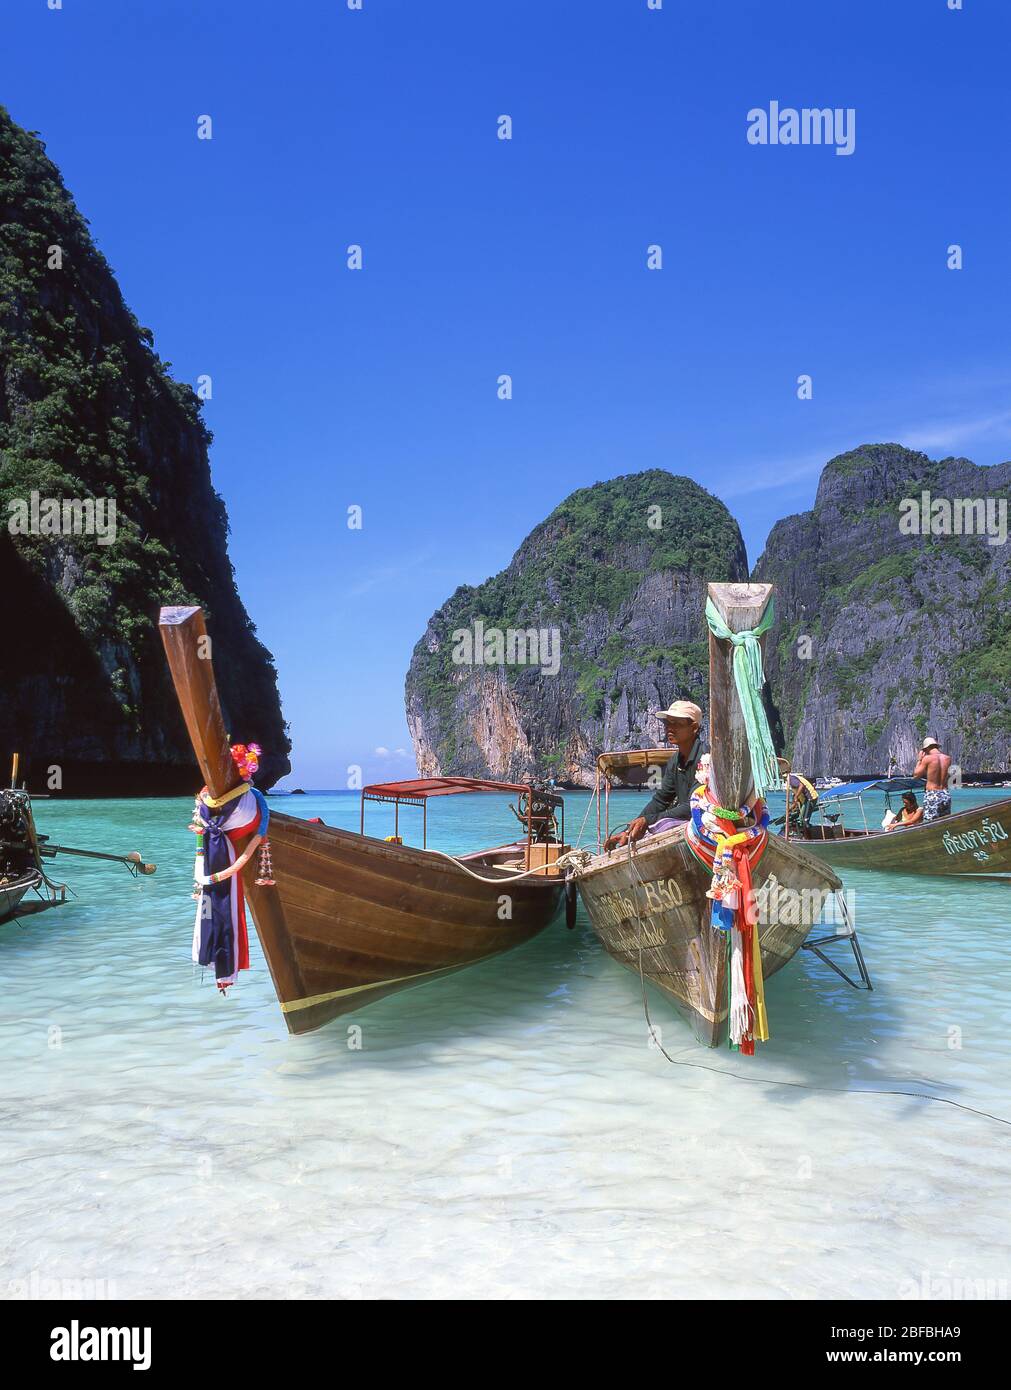 Bateaux de pêche à queue longue, baie de Mahya, Ko Phi Phi le, îles de Phi Phi, province de Krabi, Thaïlande Banque D'Images